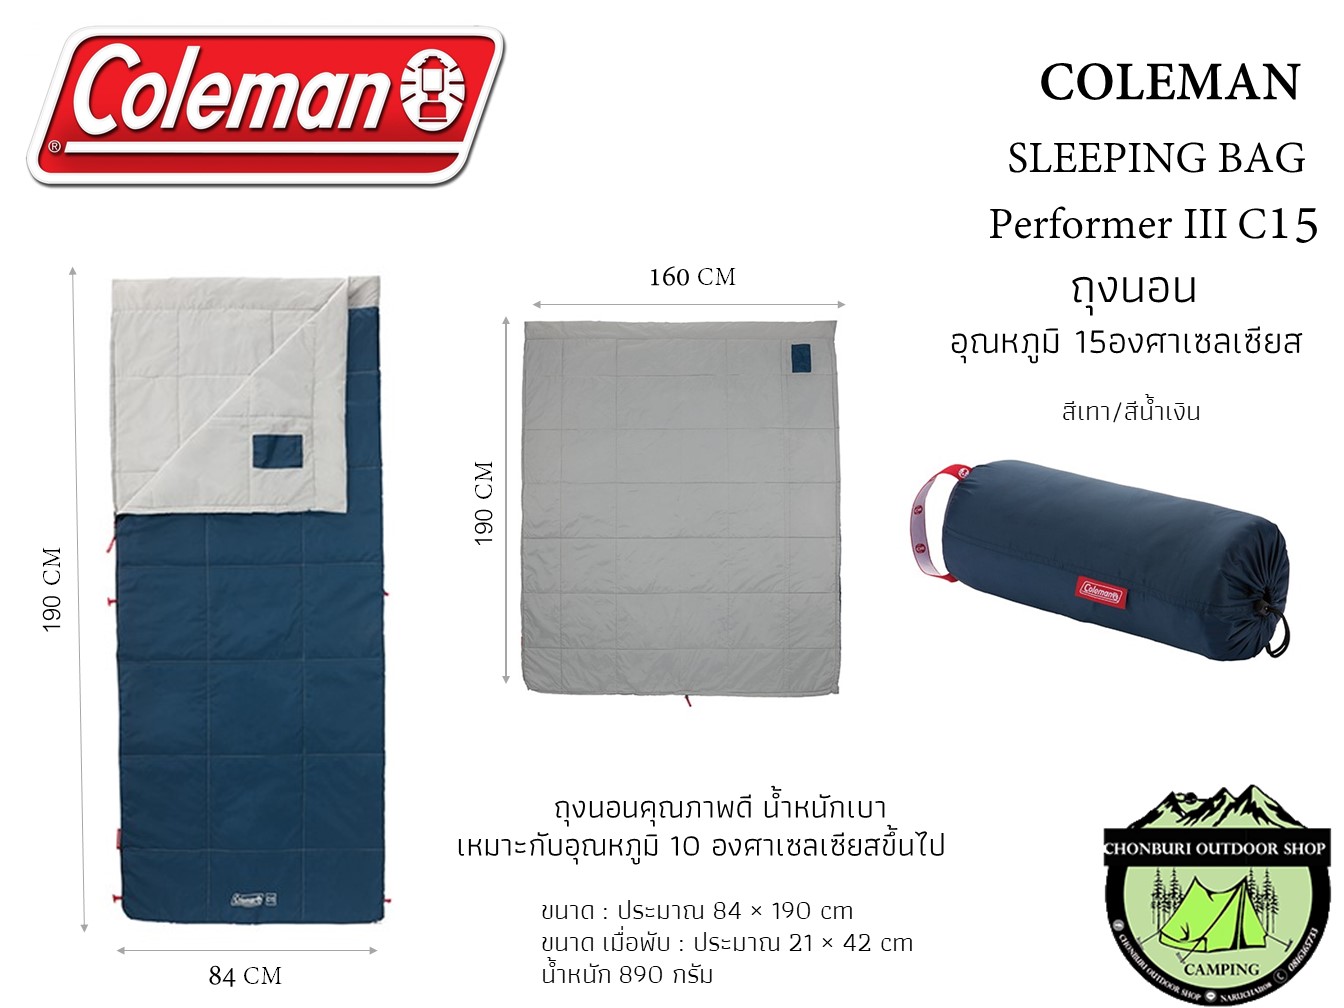 ถุงนอน COLEMAN SLEEPING BAG Performer III C15 2000032339 อุณหภูมิ 15องศาเซลเซียส